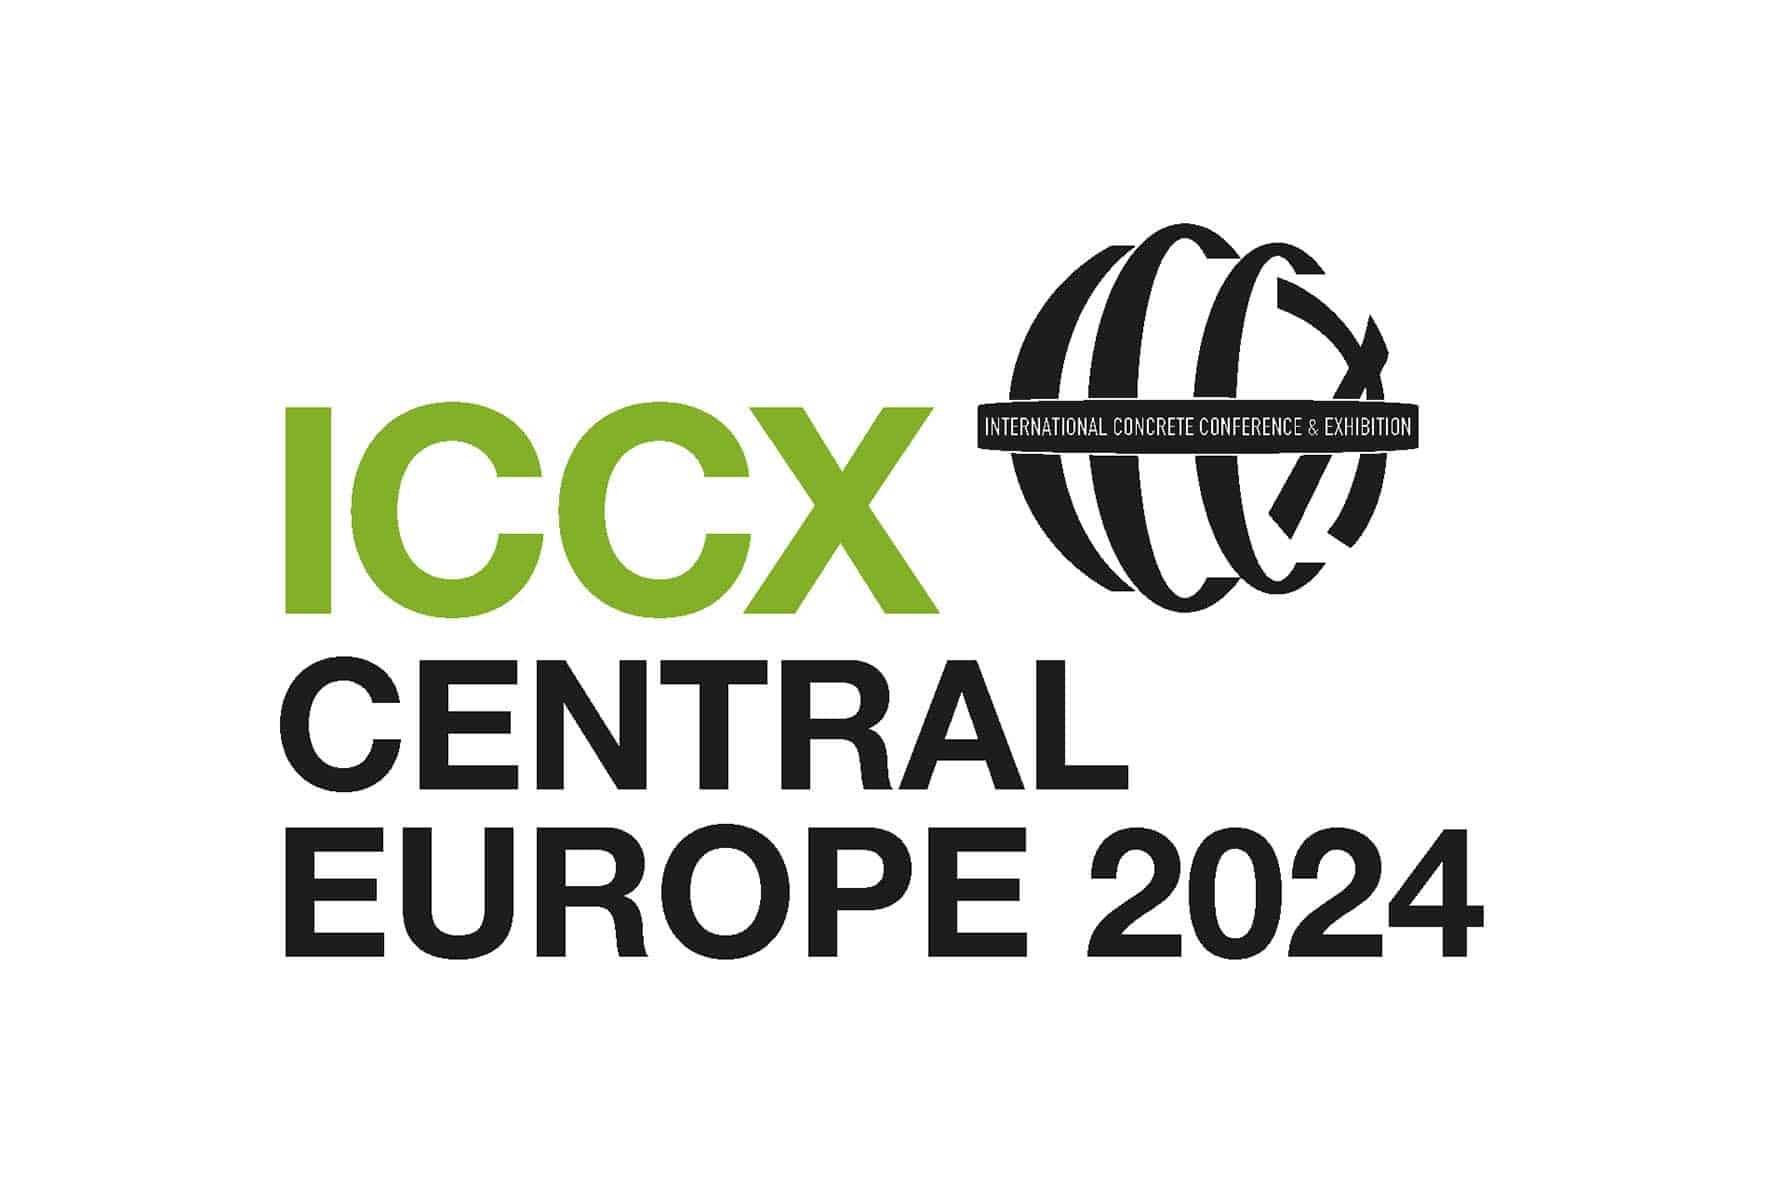 ICCX Western Europe 2024